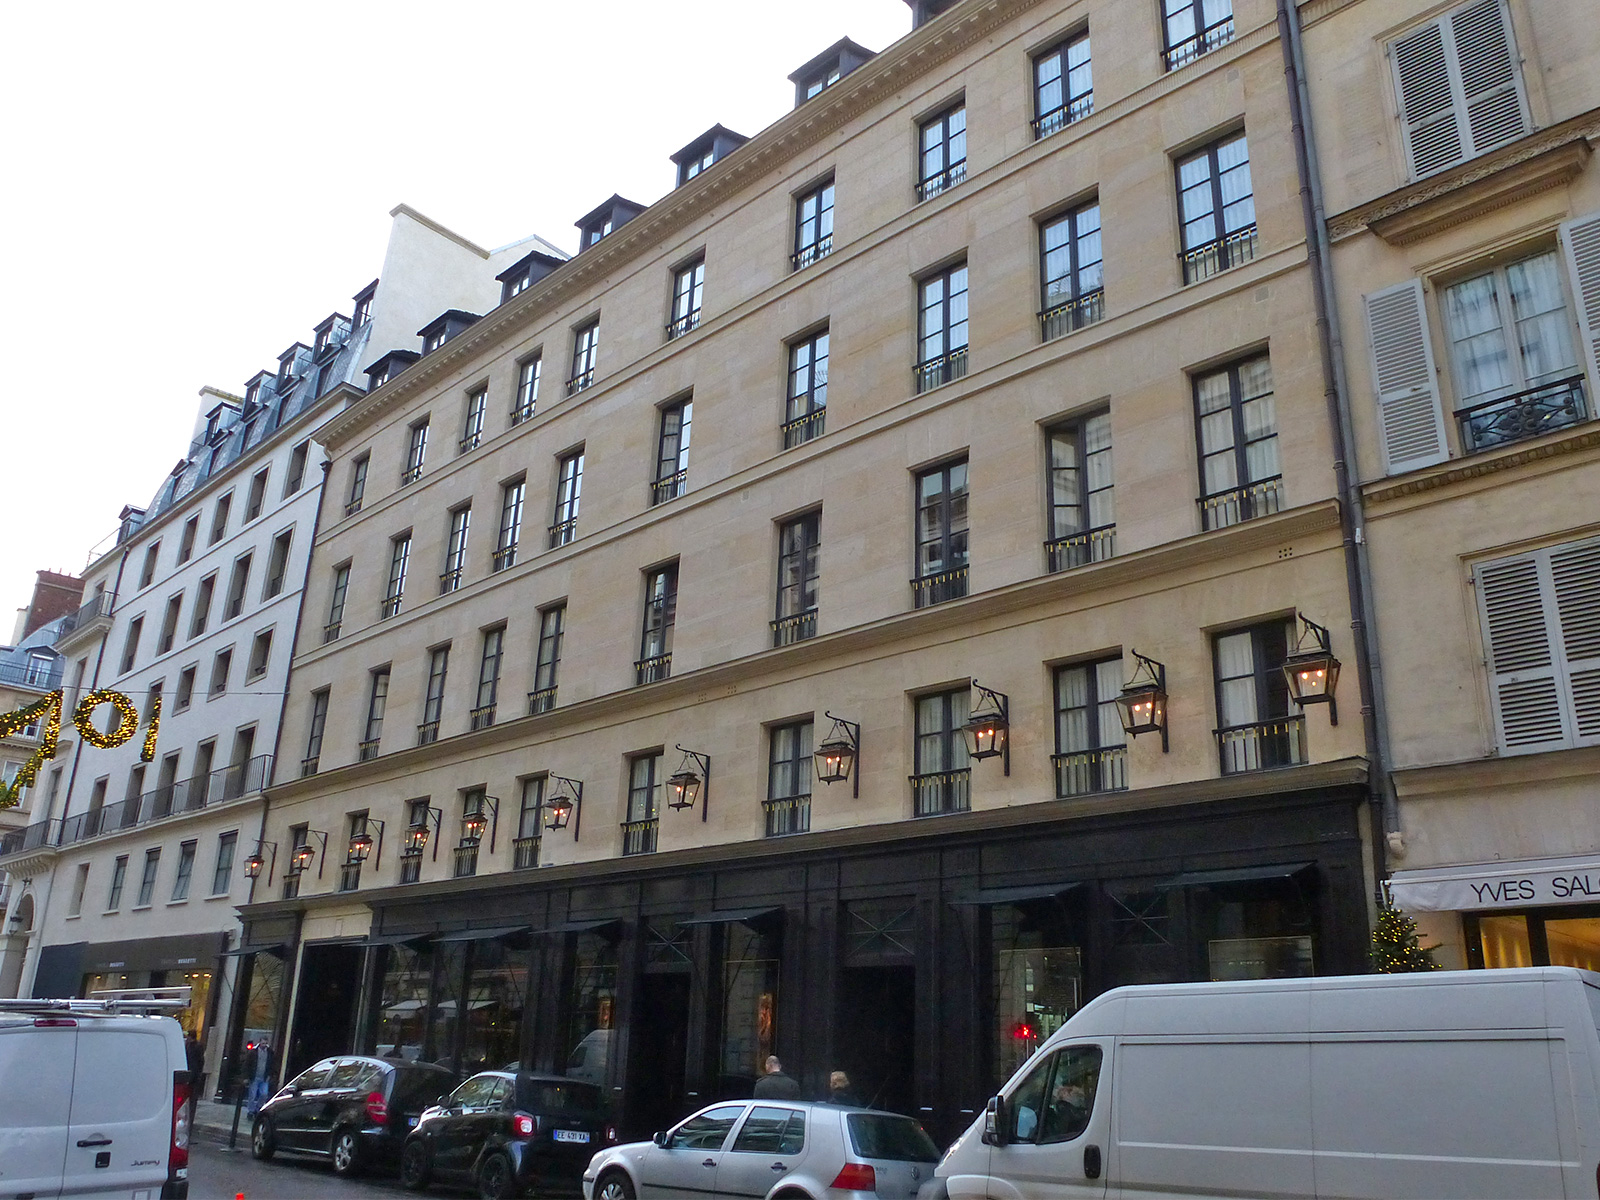 Hôtel Costes 239 rue Saint-Honoré